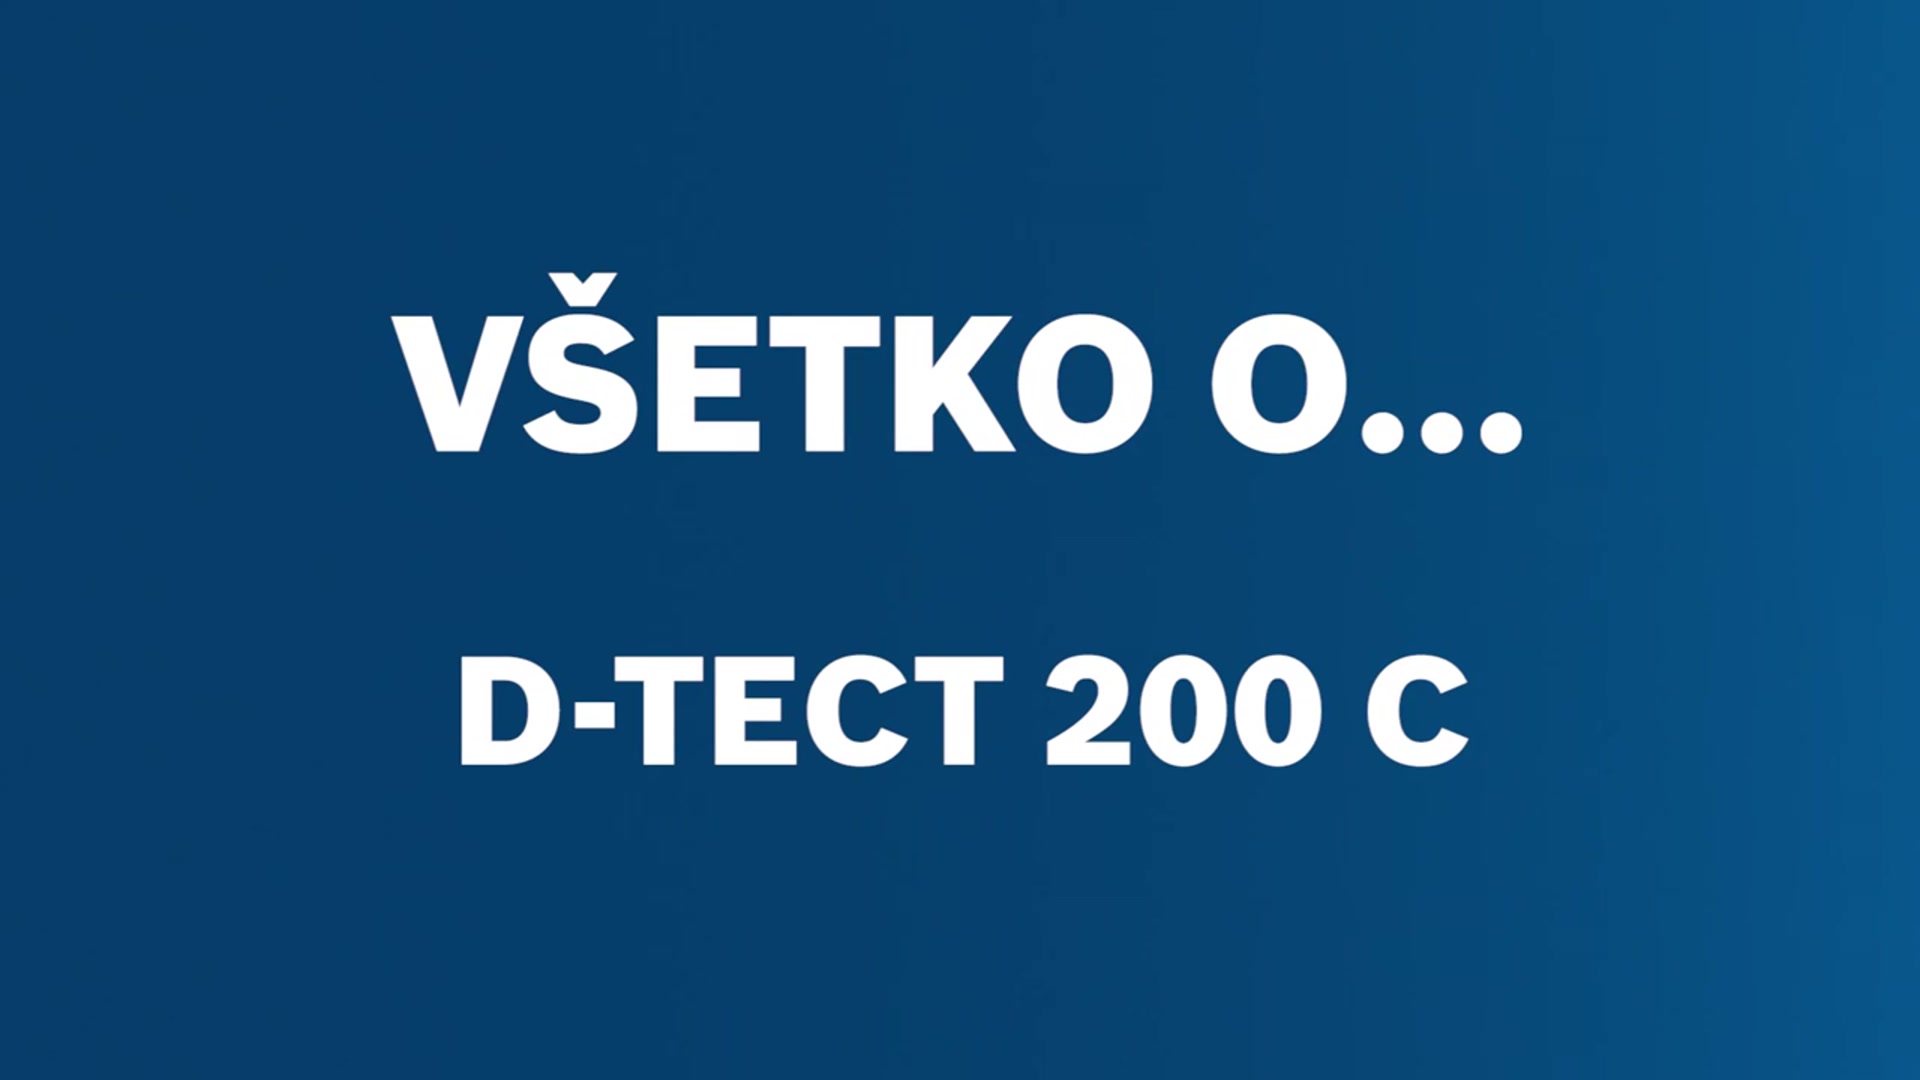 Detektor D-tect 200 C